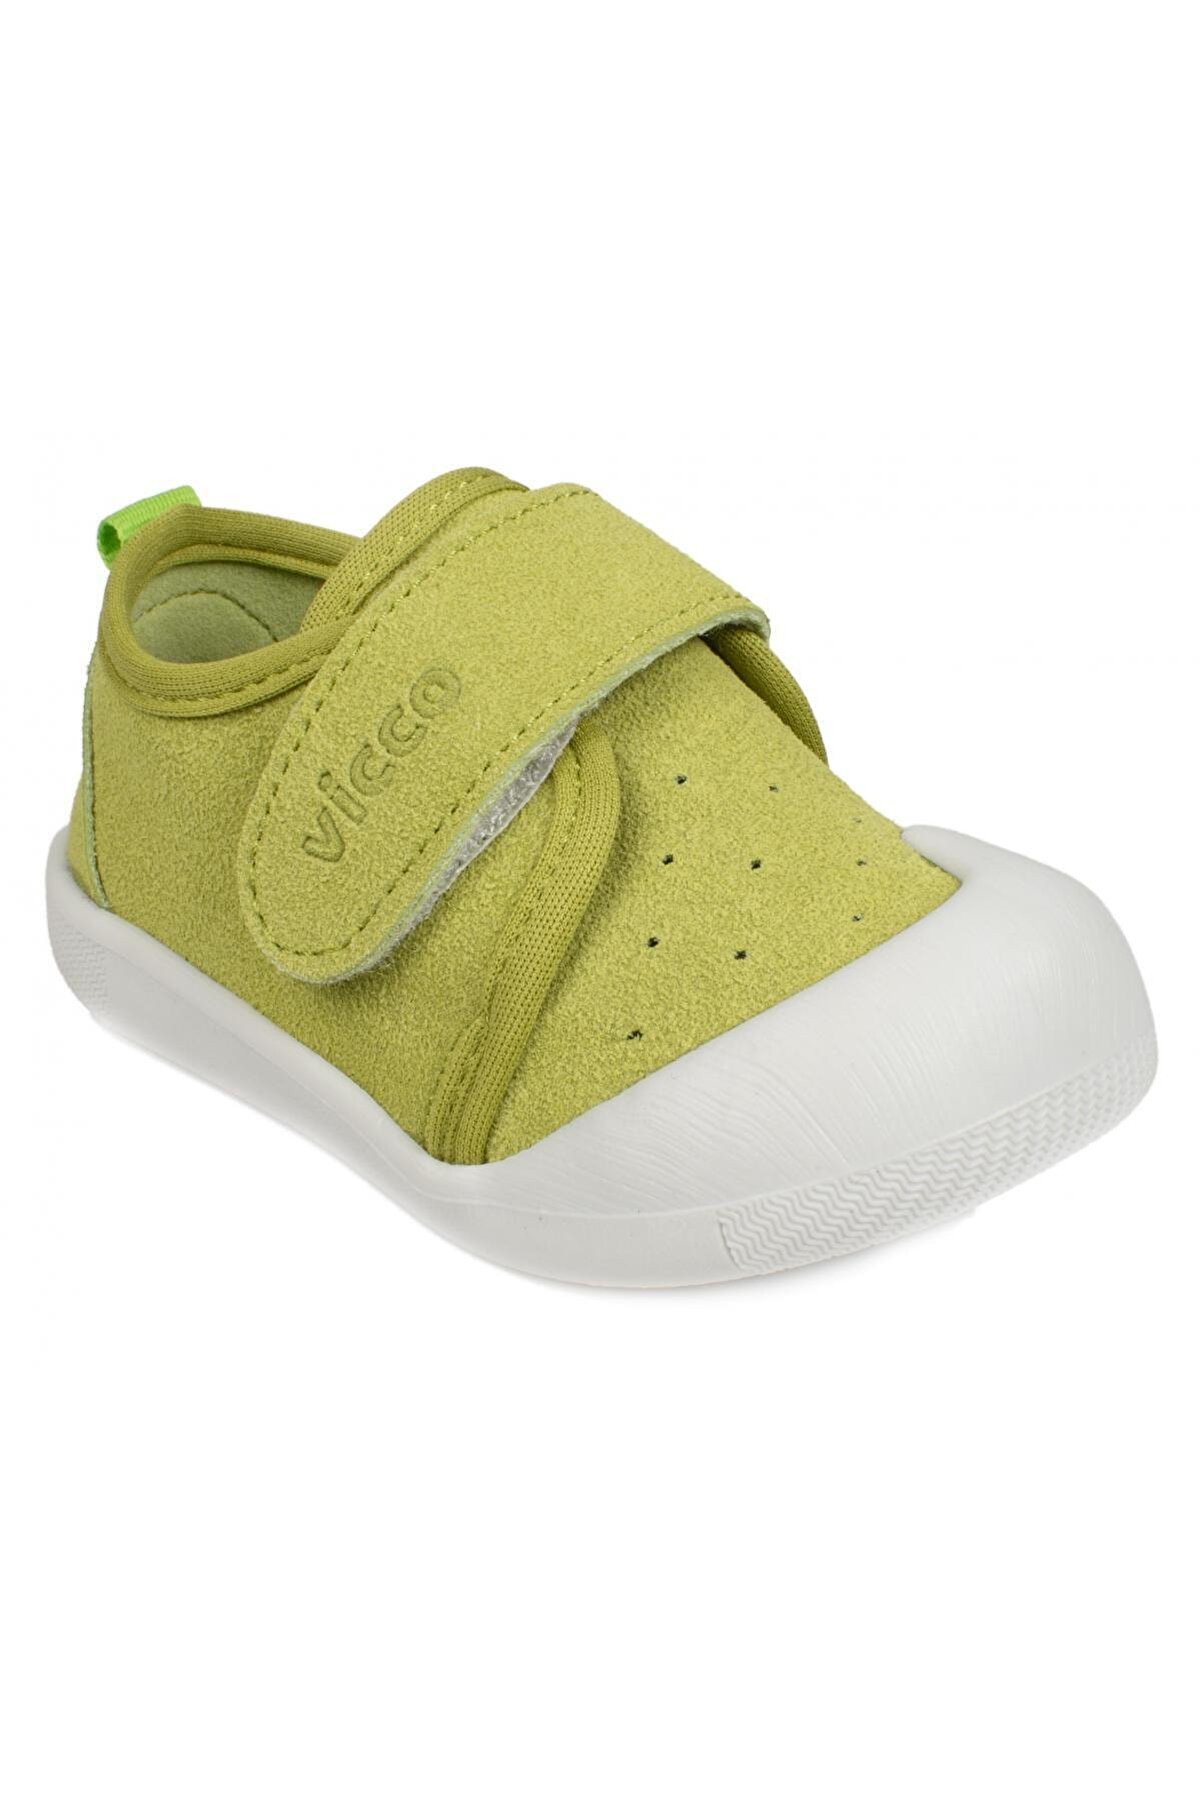 Vicco Yeşil - 950-e19k-224 Anka Günlük Bebe Ilk Adım Ayakkabı